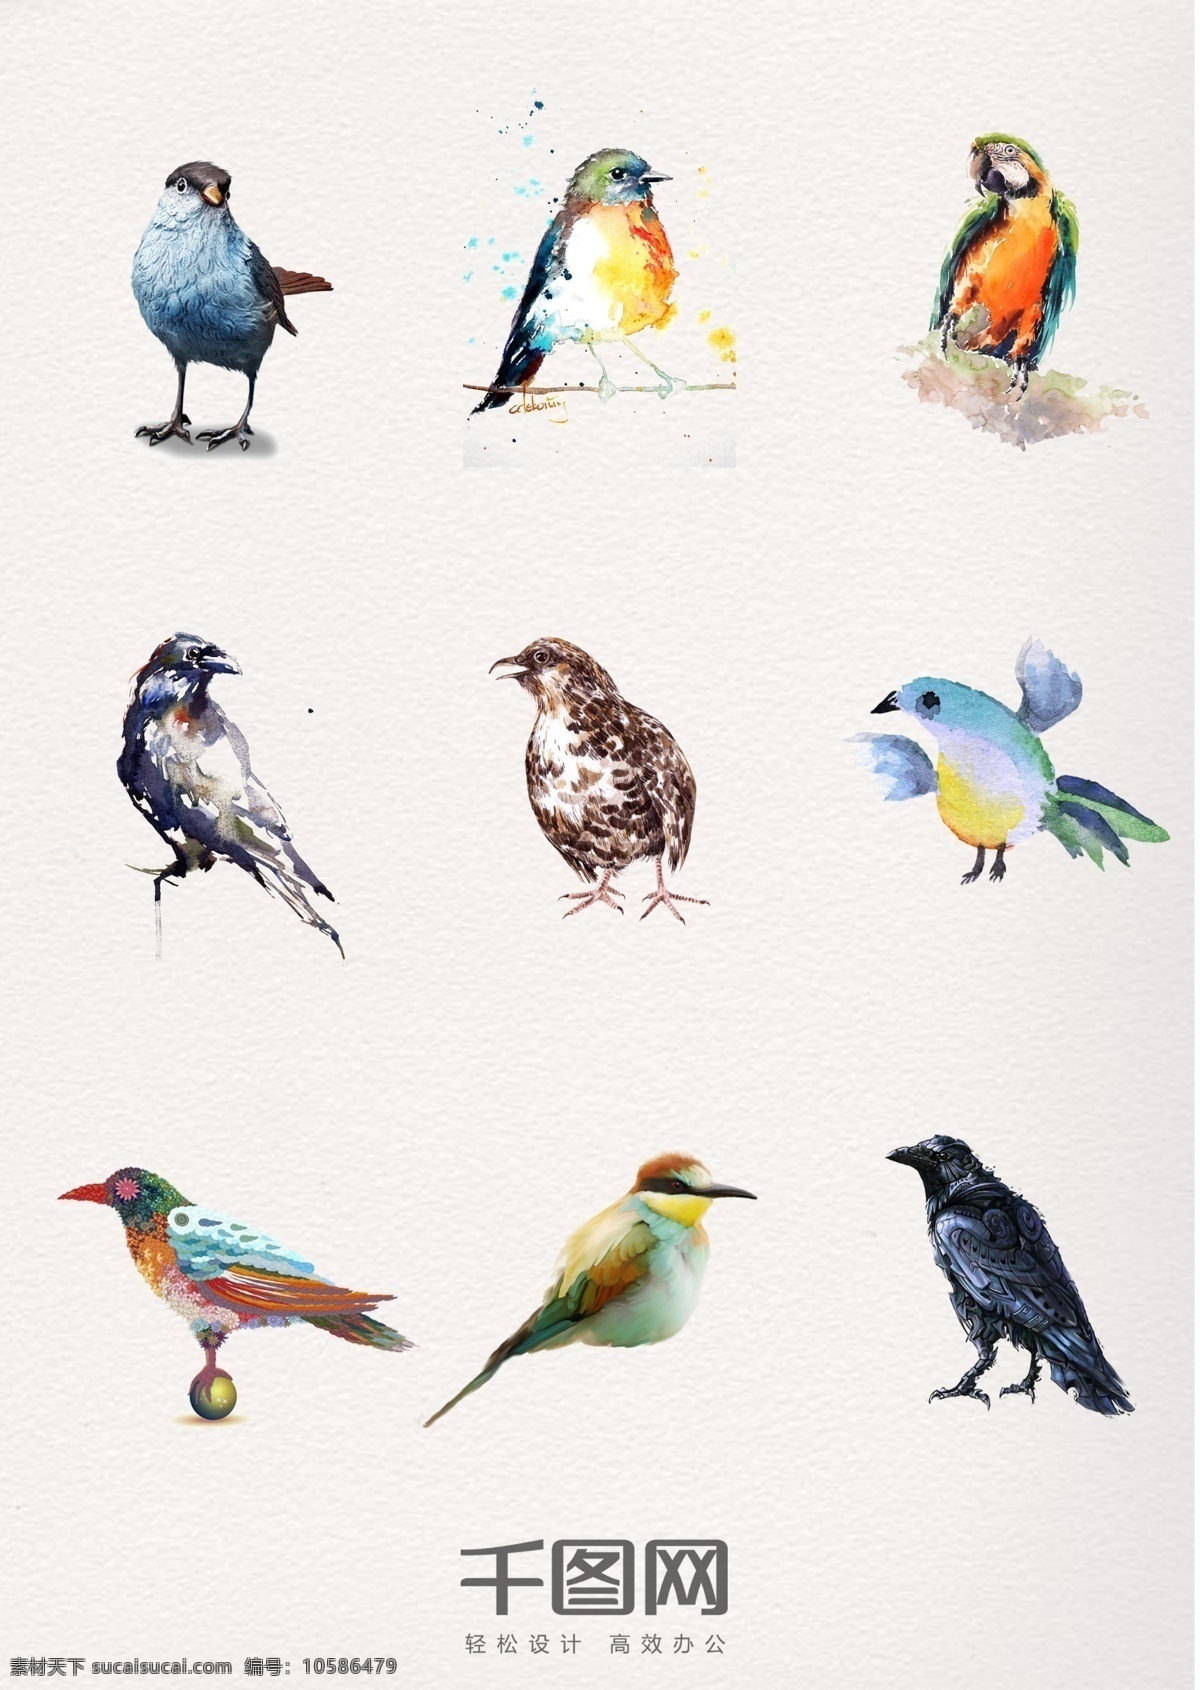 组 水彩 动物 飞鸟 元素 手绘 翅膀 插画 psd素材 可爱